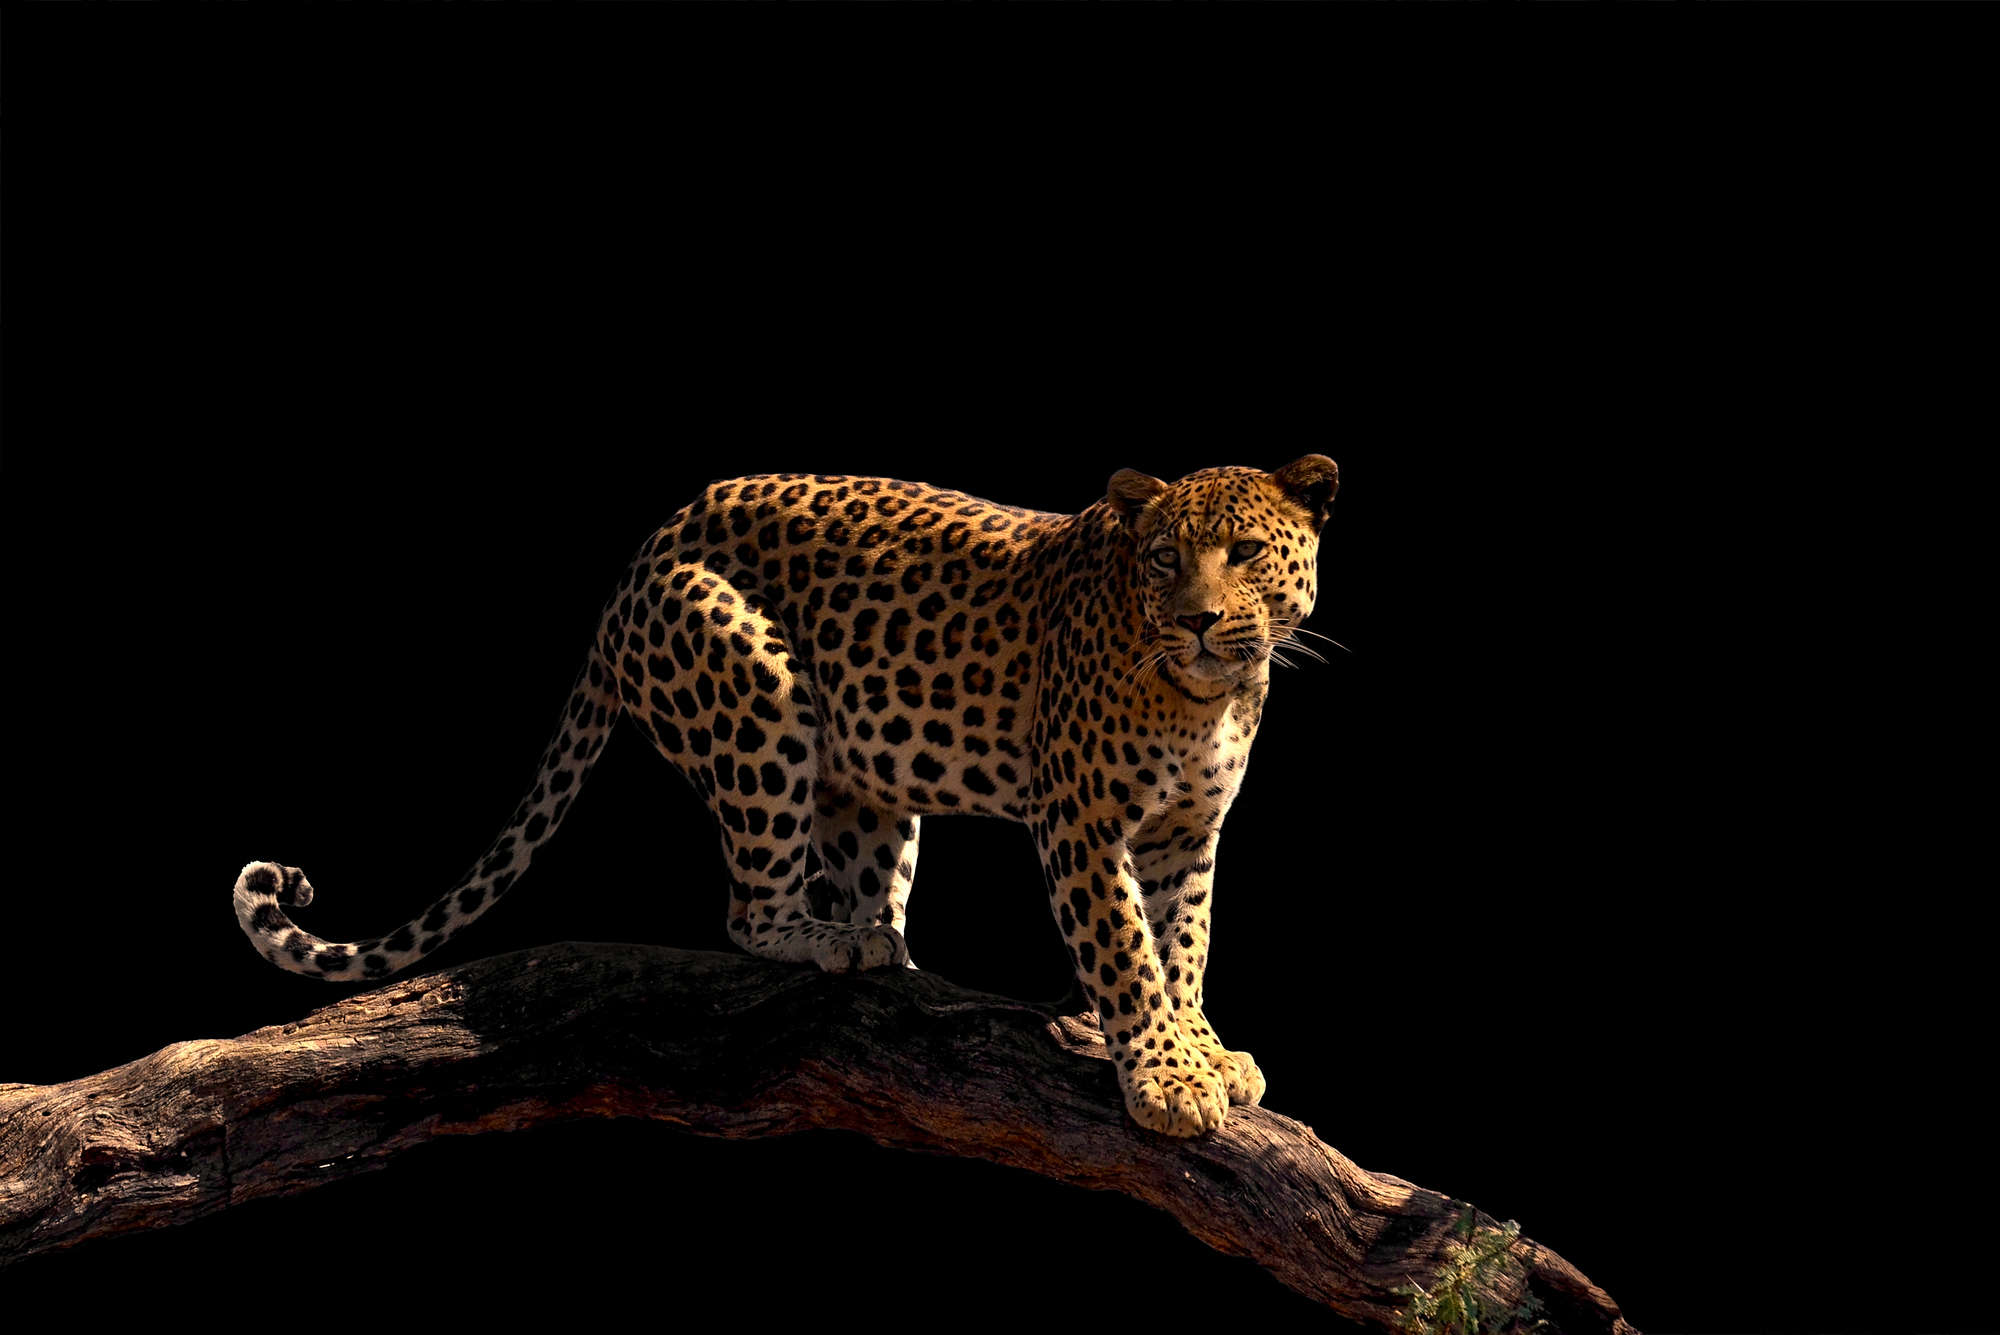             Leopard Fototapete auf einem Ast stehend auf Perlmutt Glattvlies
        